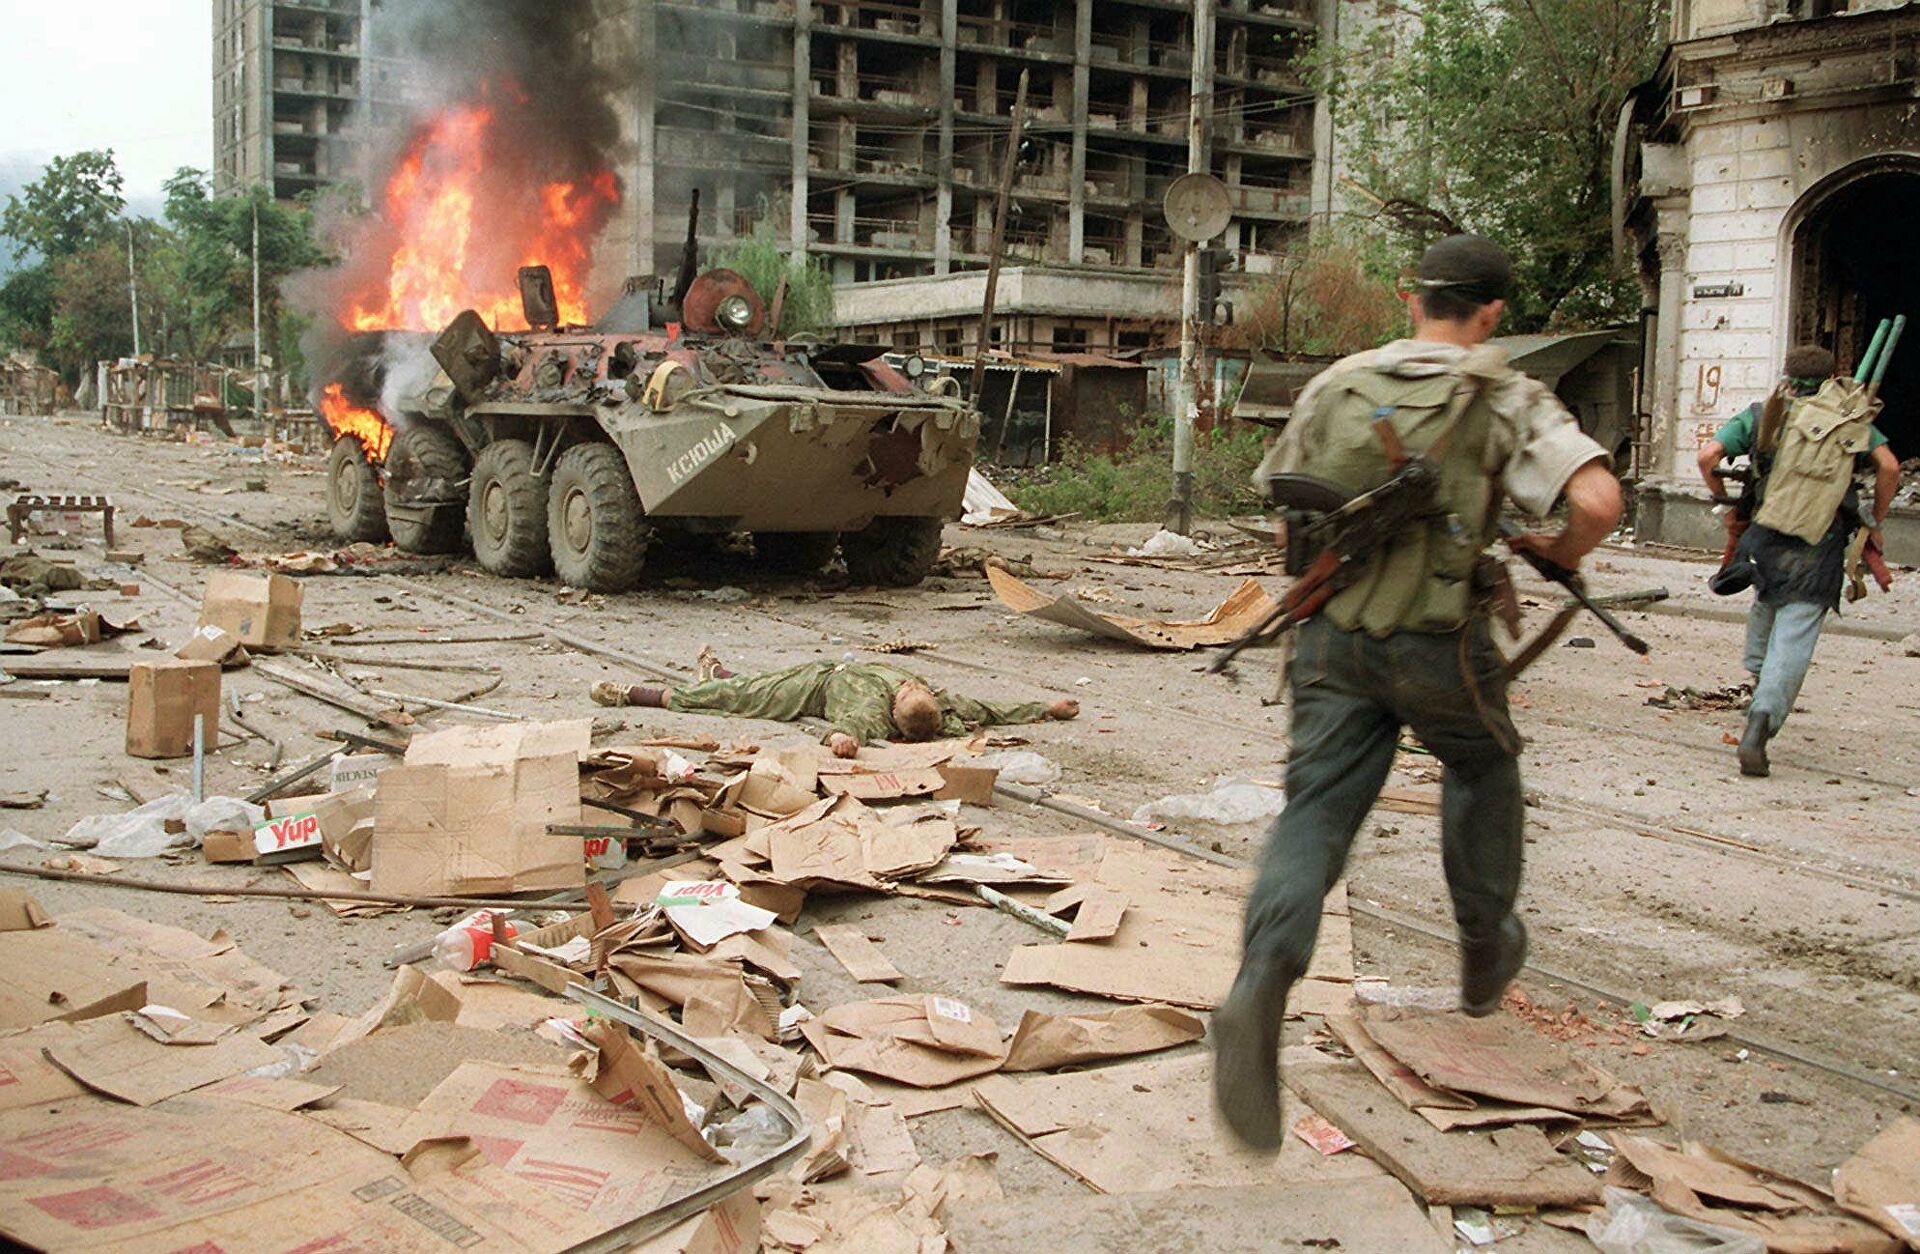 Теракт перед чеченской войной